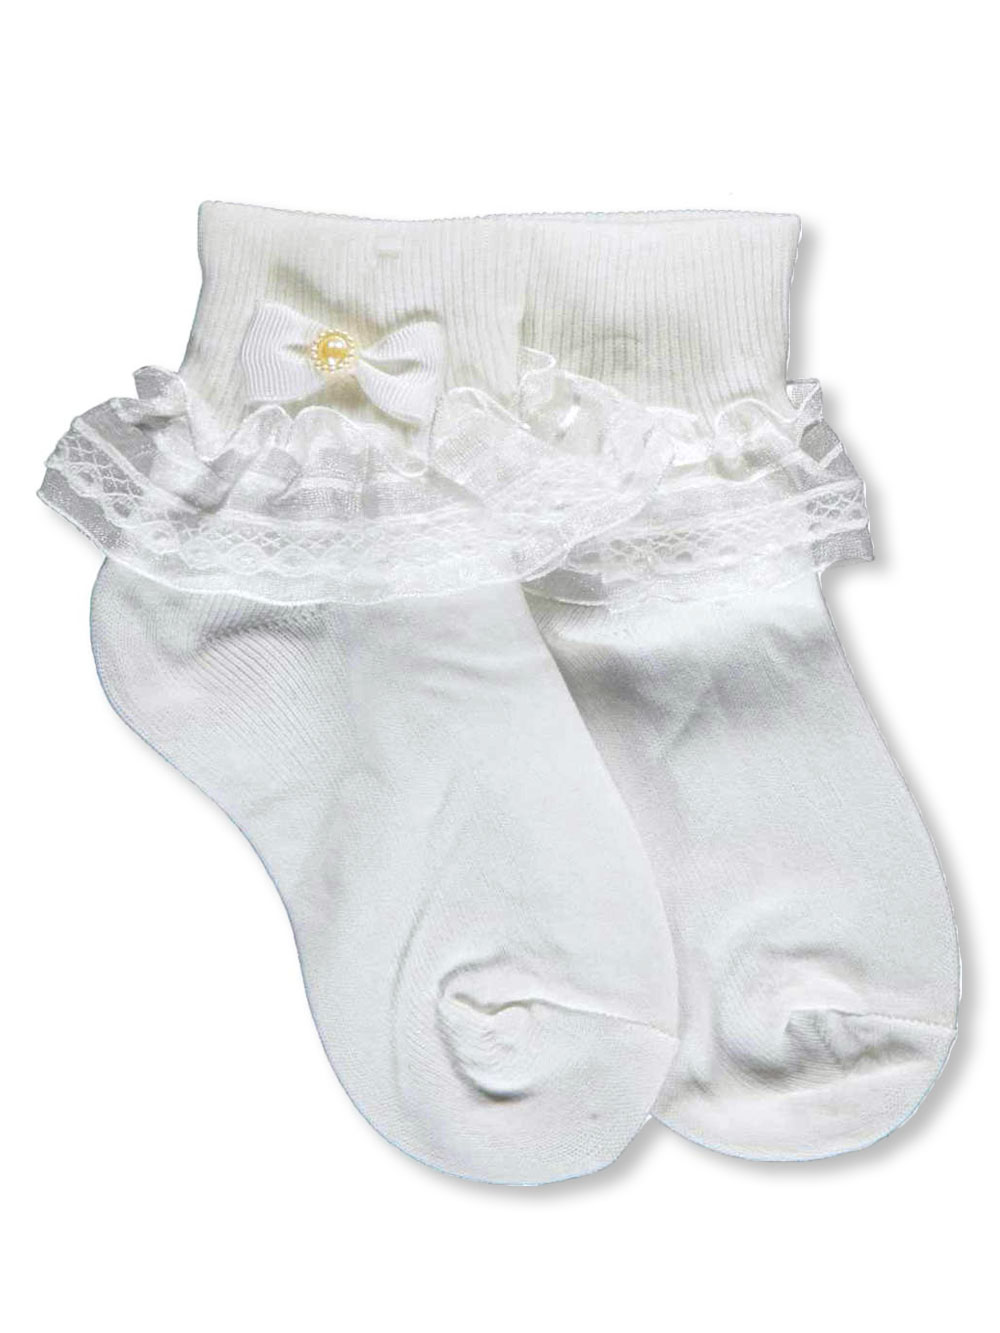 baby girl ivory socks